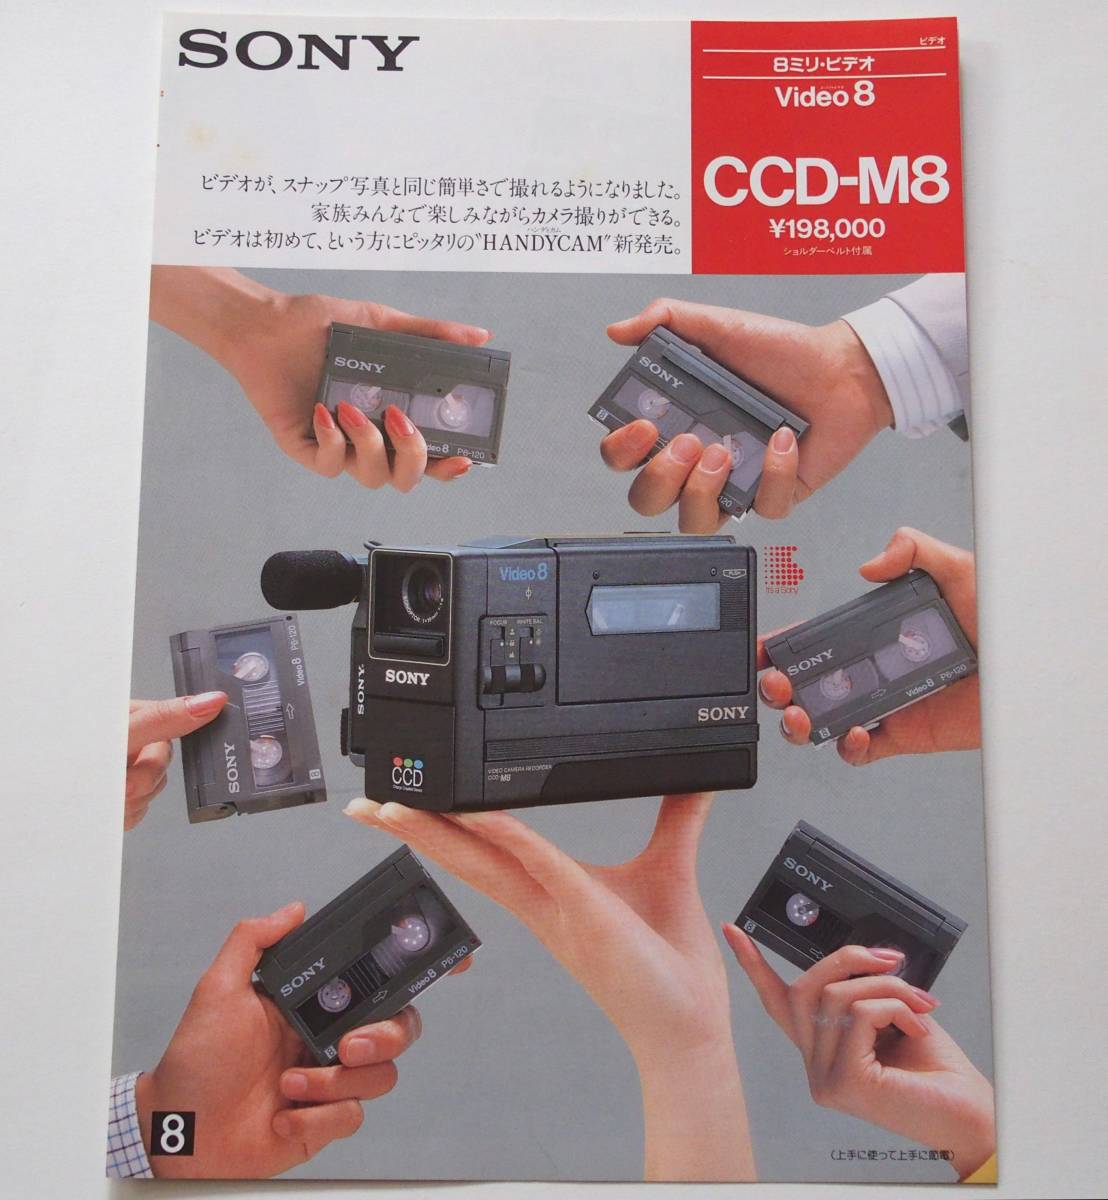 【カタログ2部セット】「SONY 8ミリビデオ Video8 CCD-M8 カタログ」/「SONY 8ミリビデオ Video8 EV-C8 カタログ」(1985年9月)_画像2